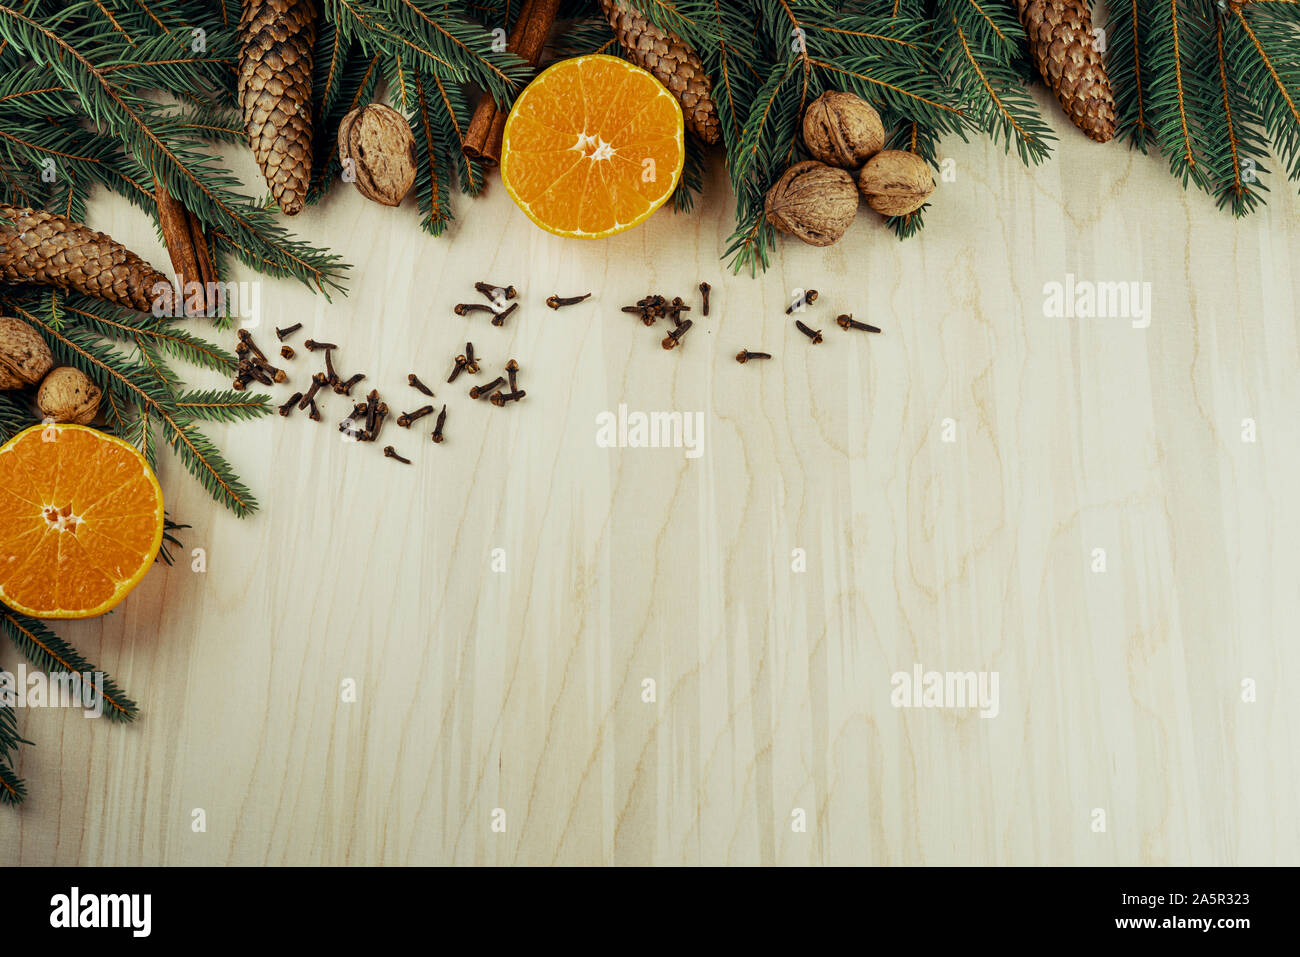 Weihnachten Rahmen mit Zweigen, Zapfen, Nüssen, Zimt, Nelken und Zitrusfrüchten auf hölzernen Hintergrund gemacht Stockfoto